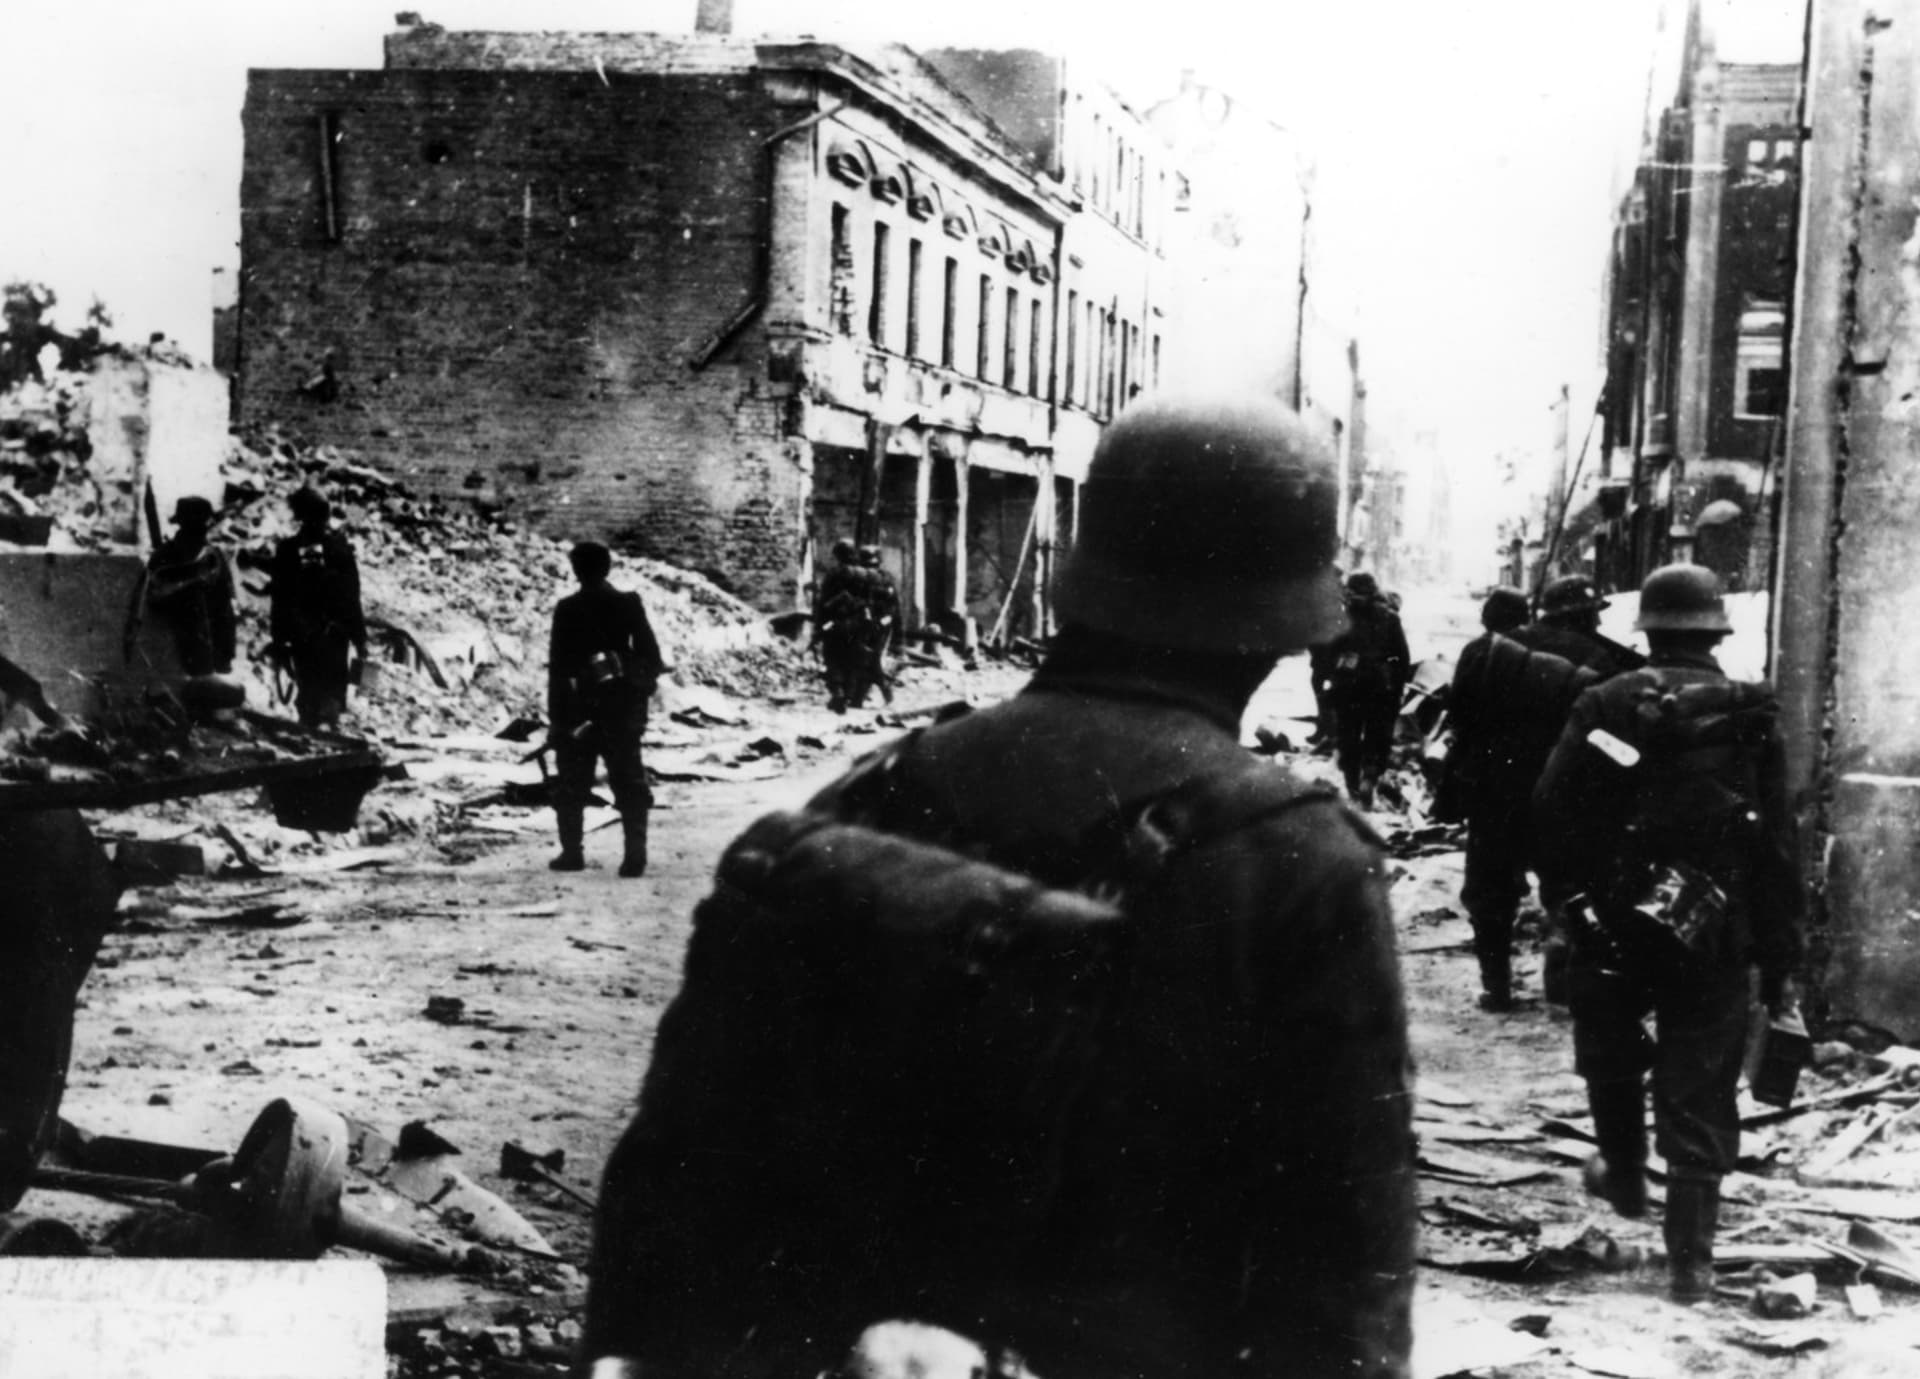 Boje v Charkově v roce 1941